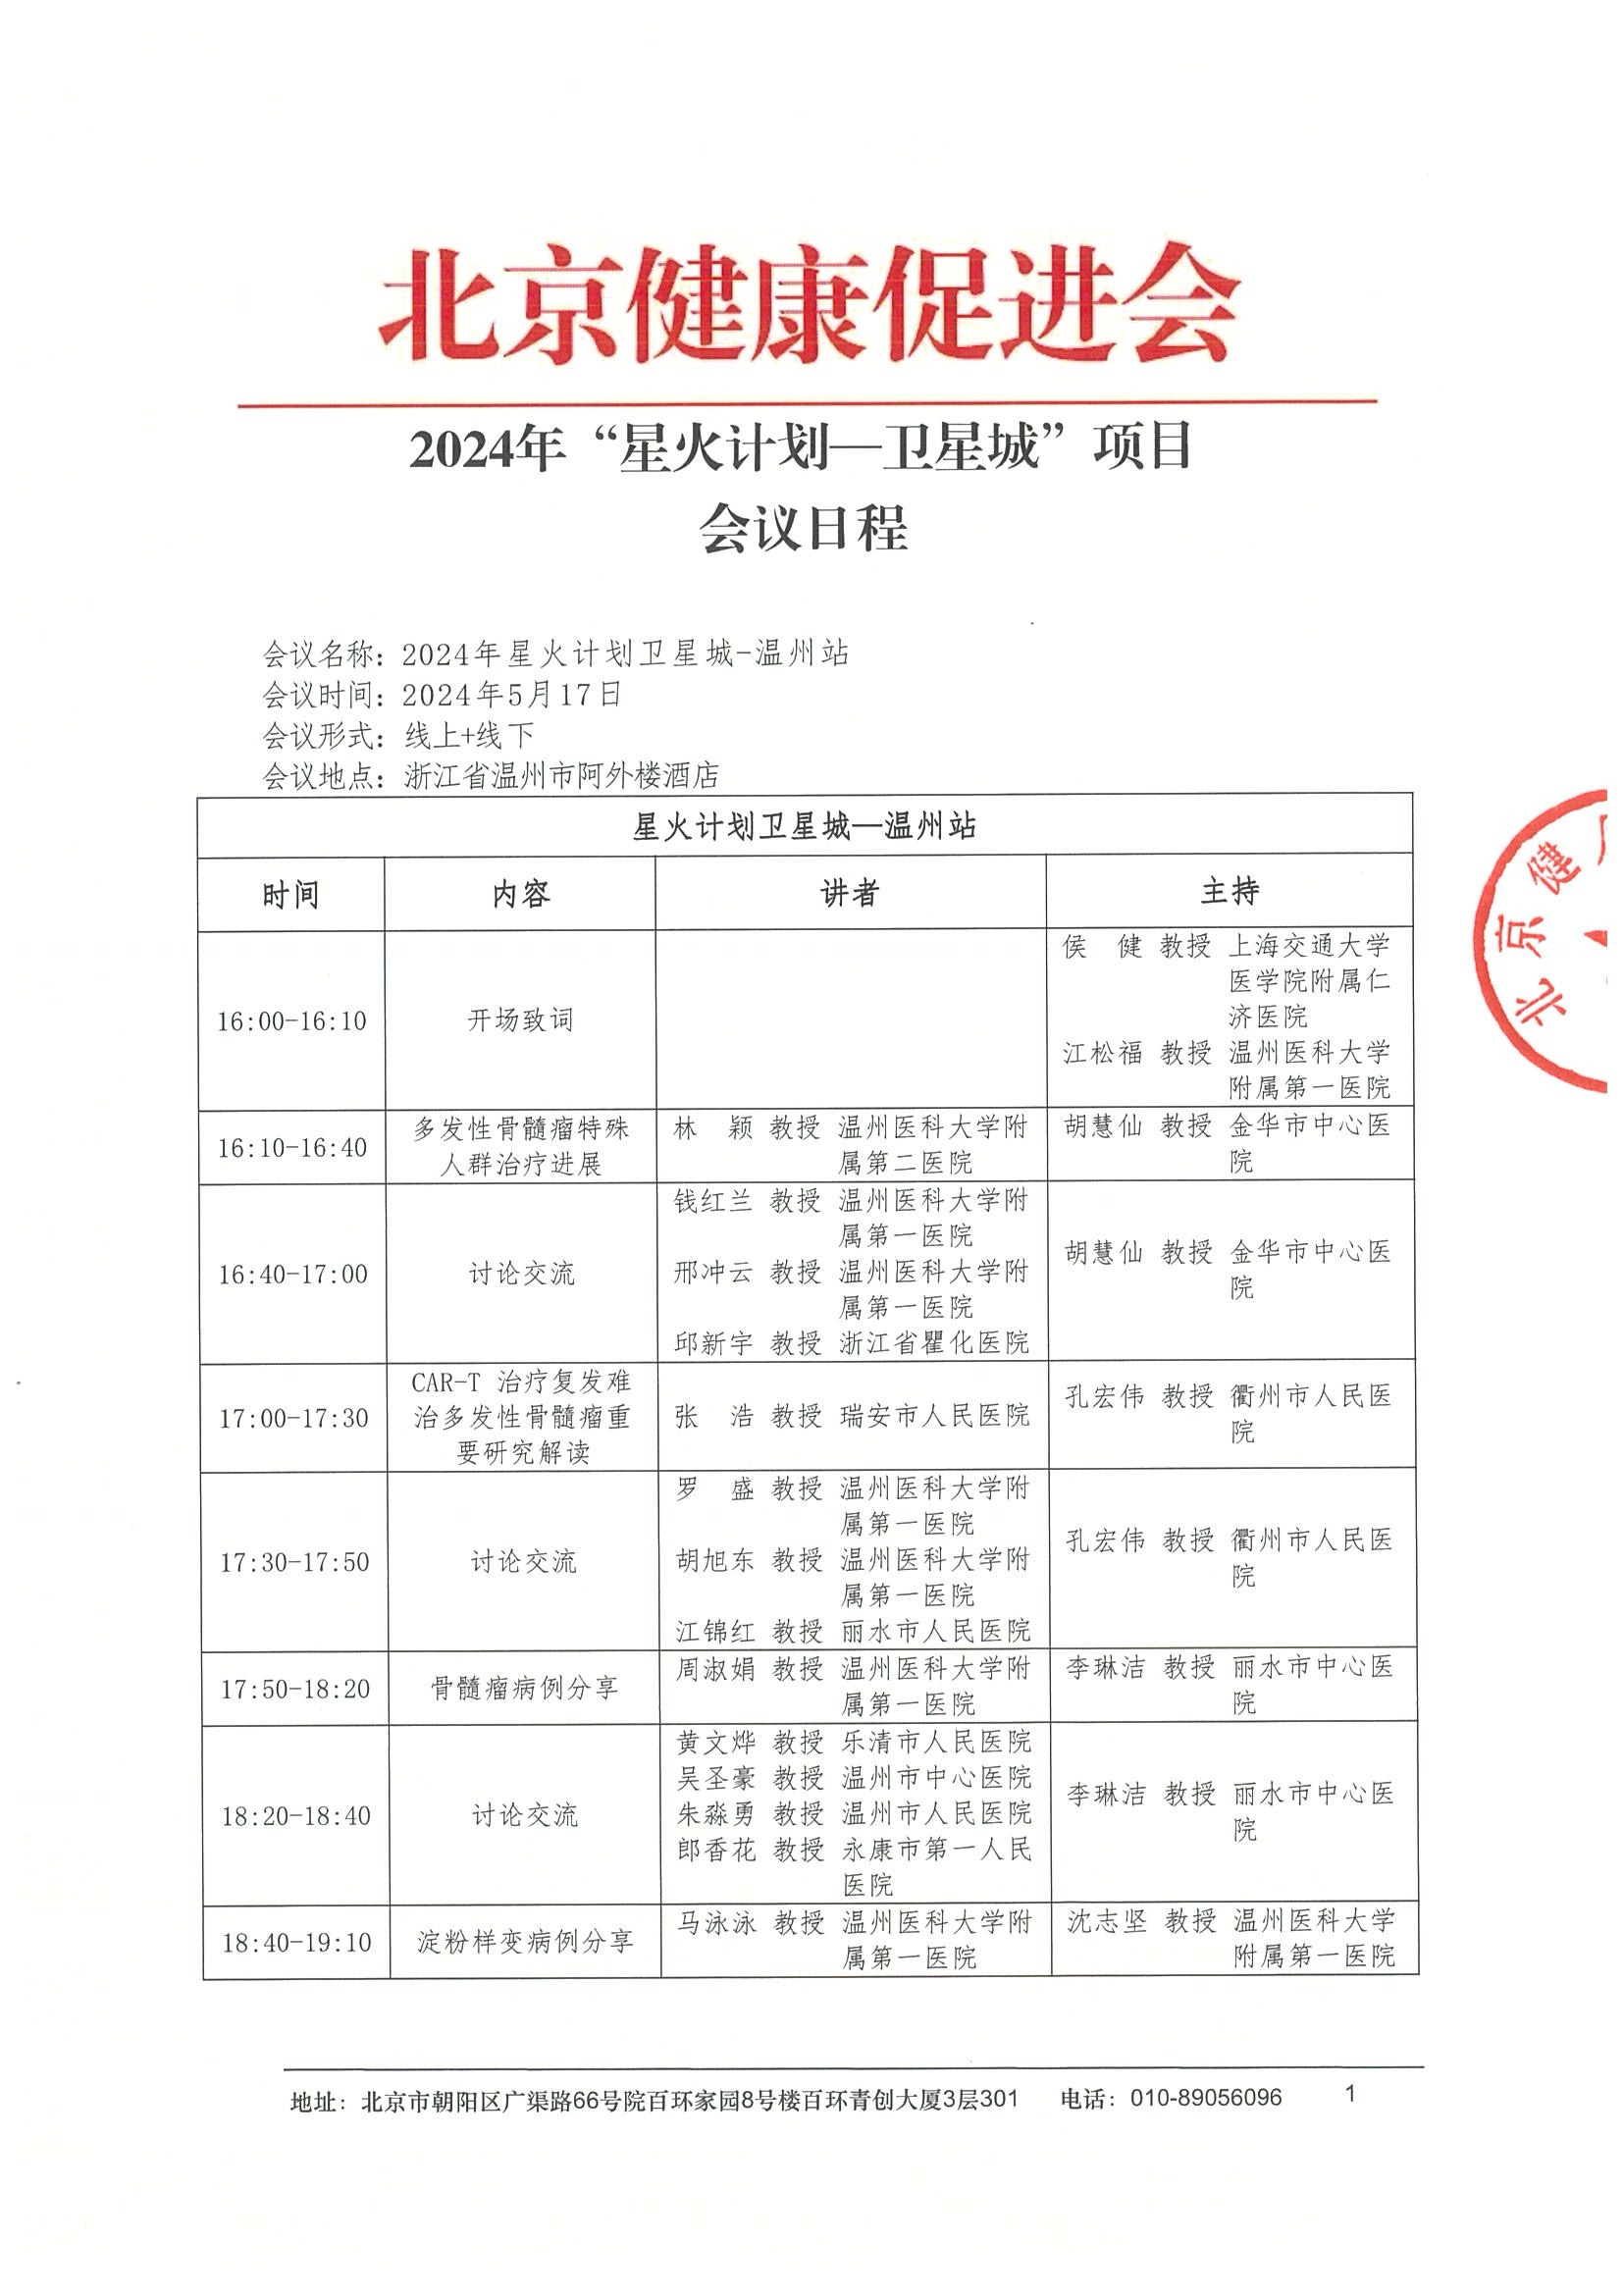 日程-2024“星火计划卫星城-温州站”项目.jpeg